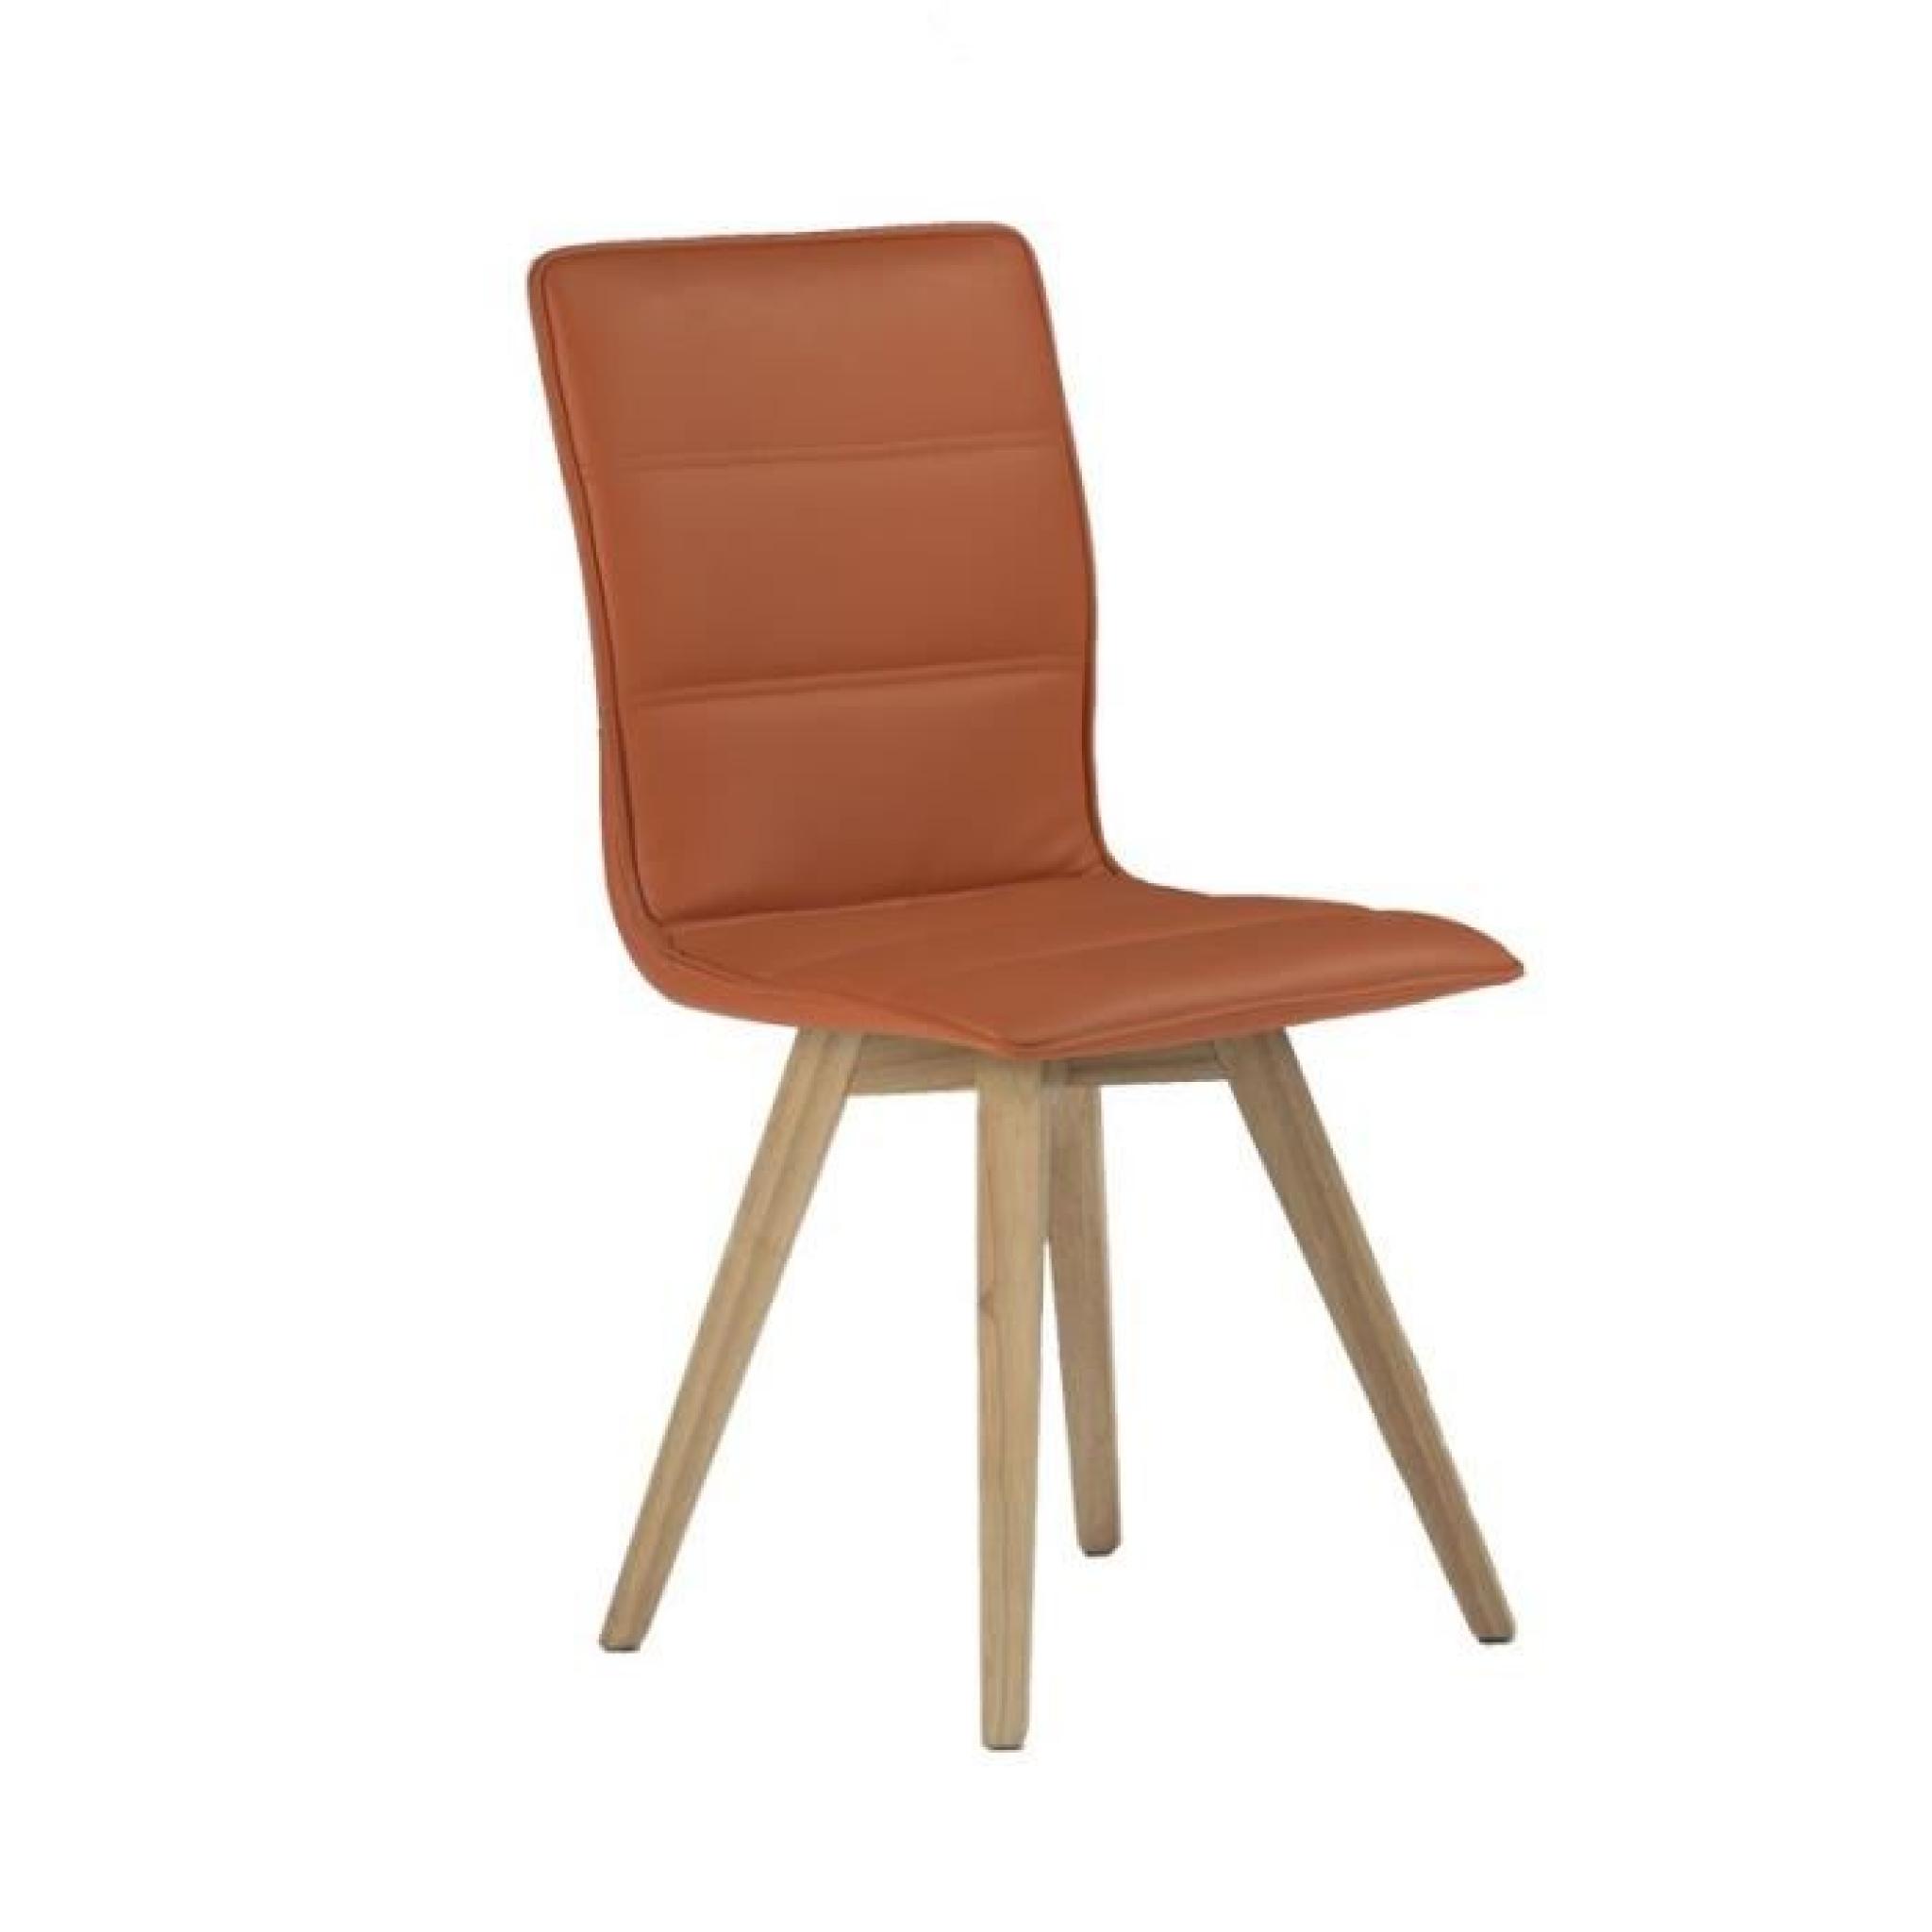 Duo de chaises simili cuir Orange - KANO - L 43 x l 53 x H 88 cm pas cher